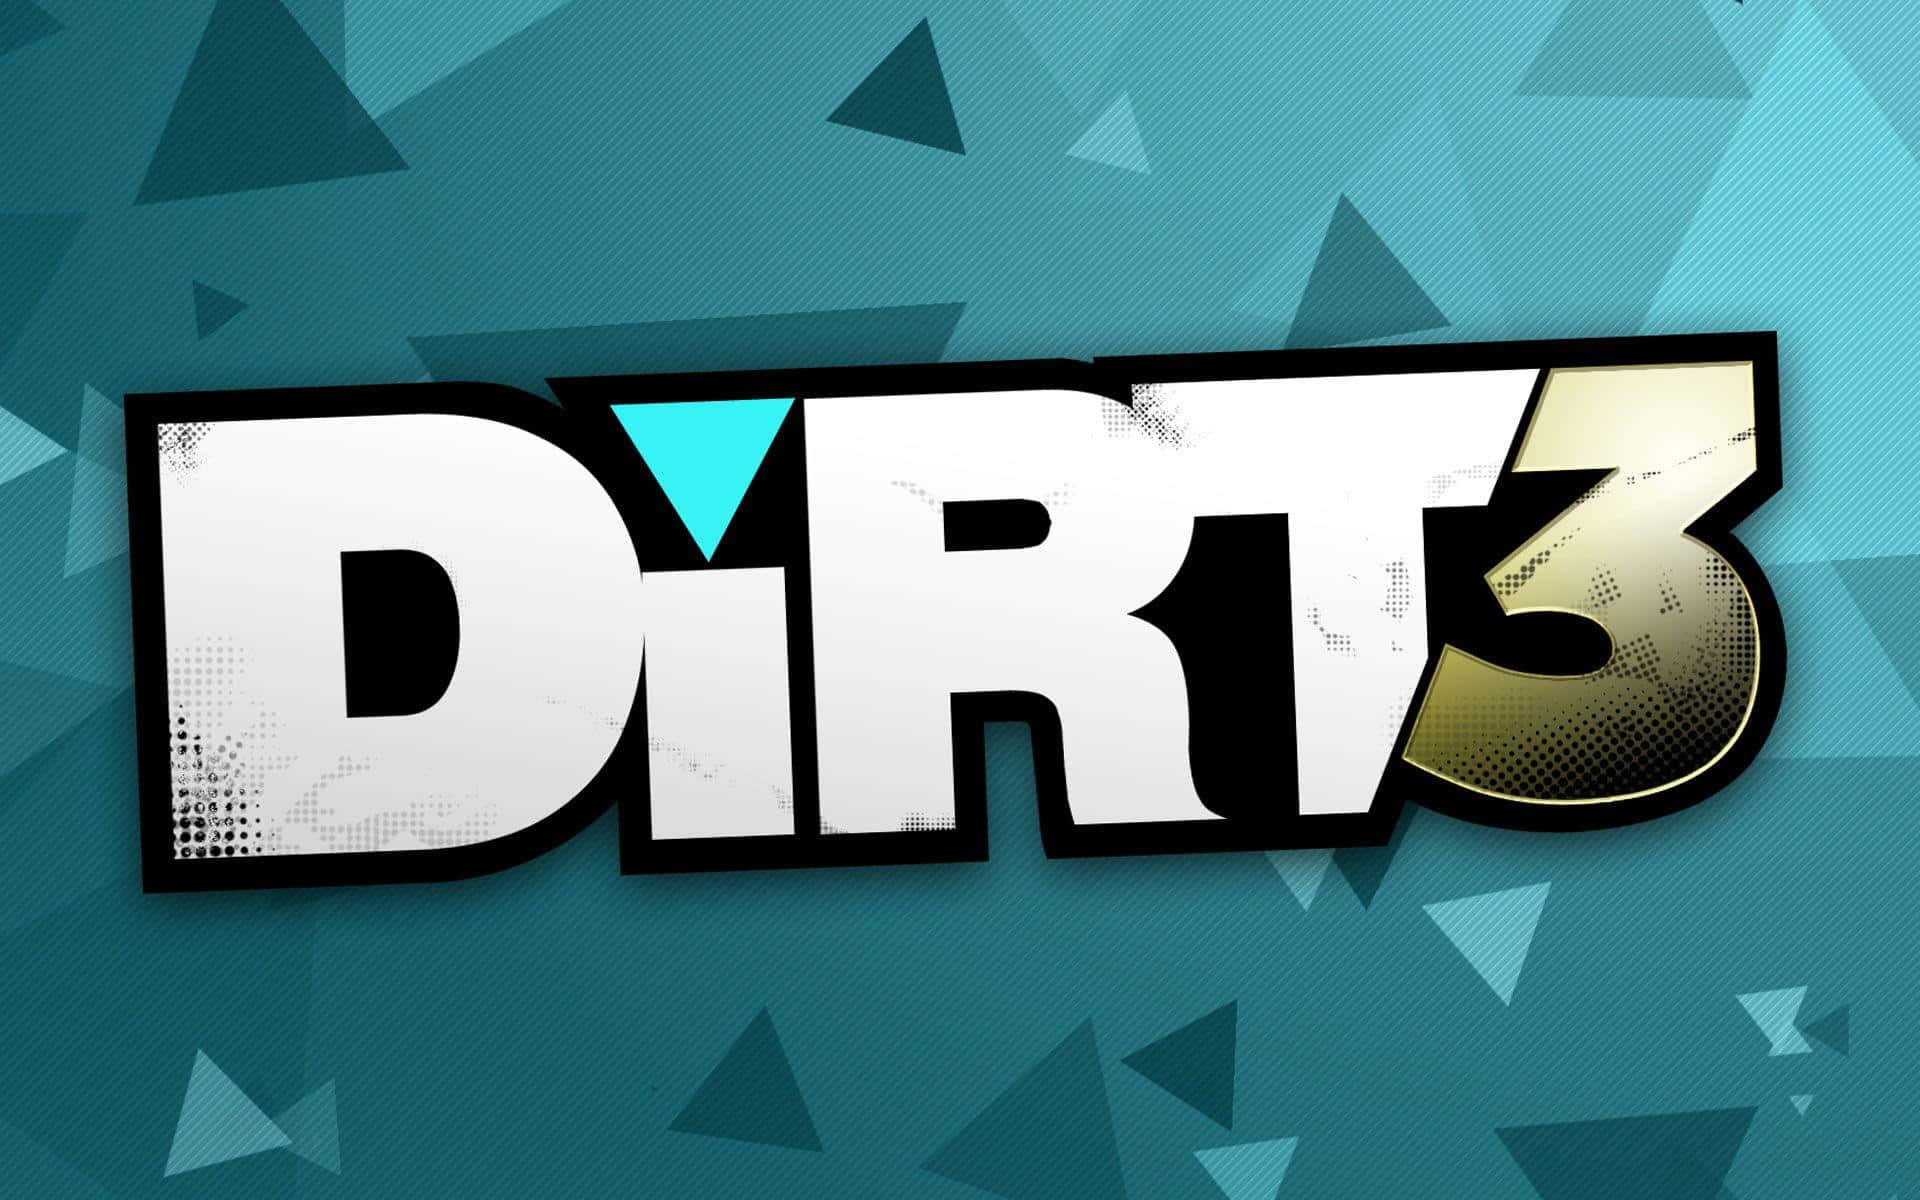 Dirt3-logotyp På En Blå Bakgrund.